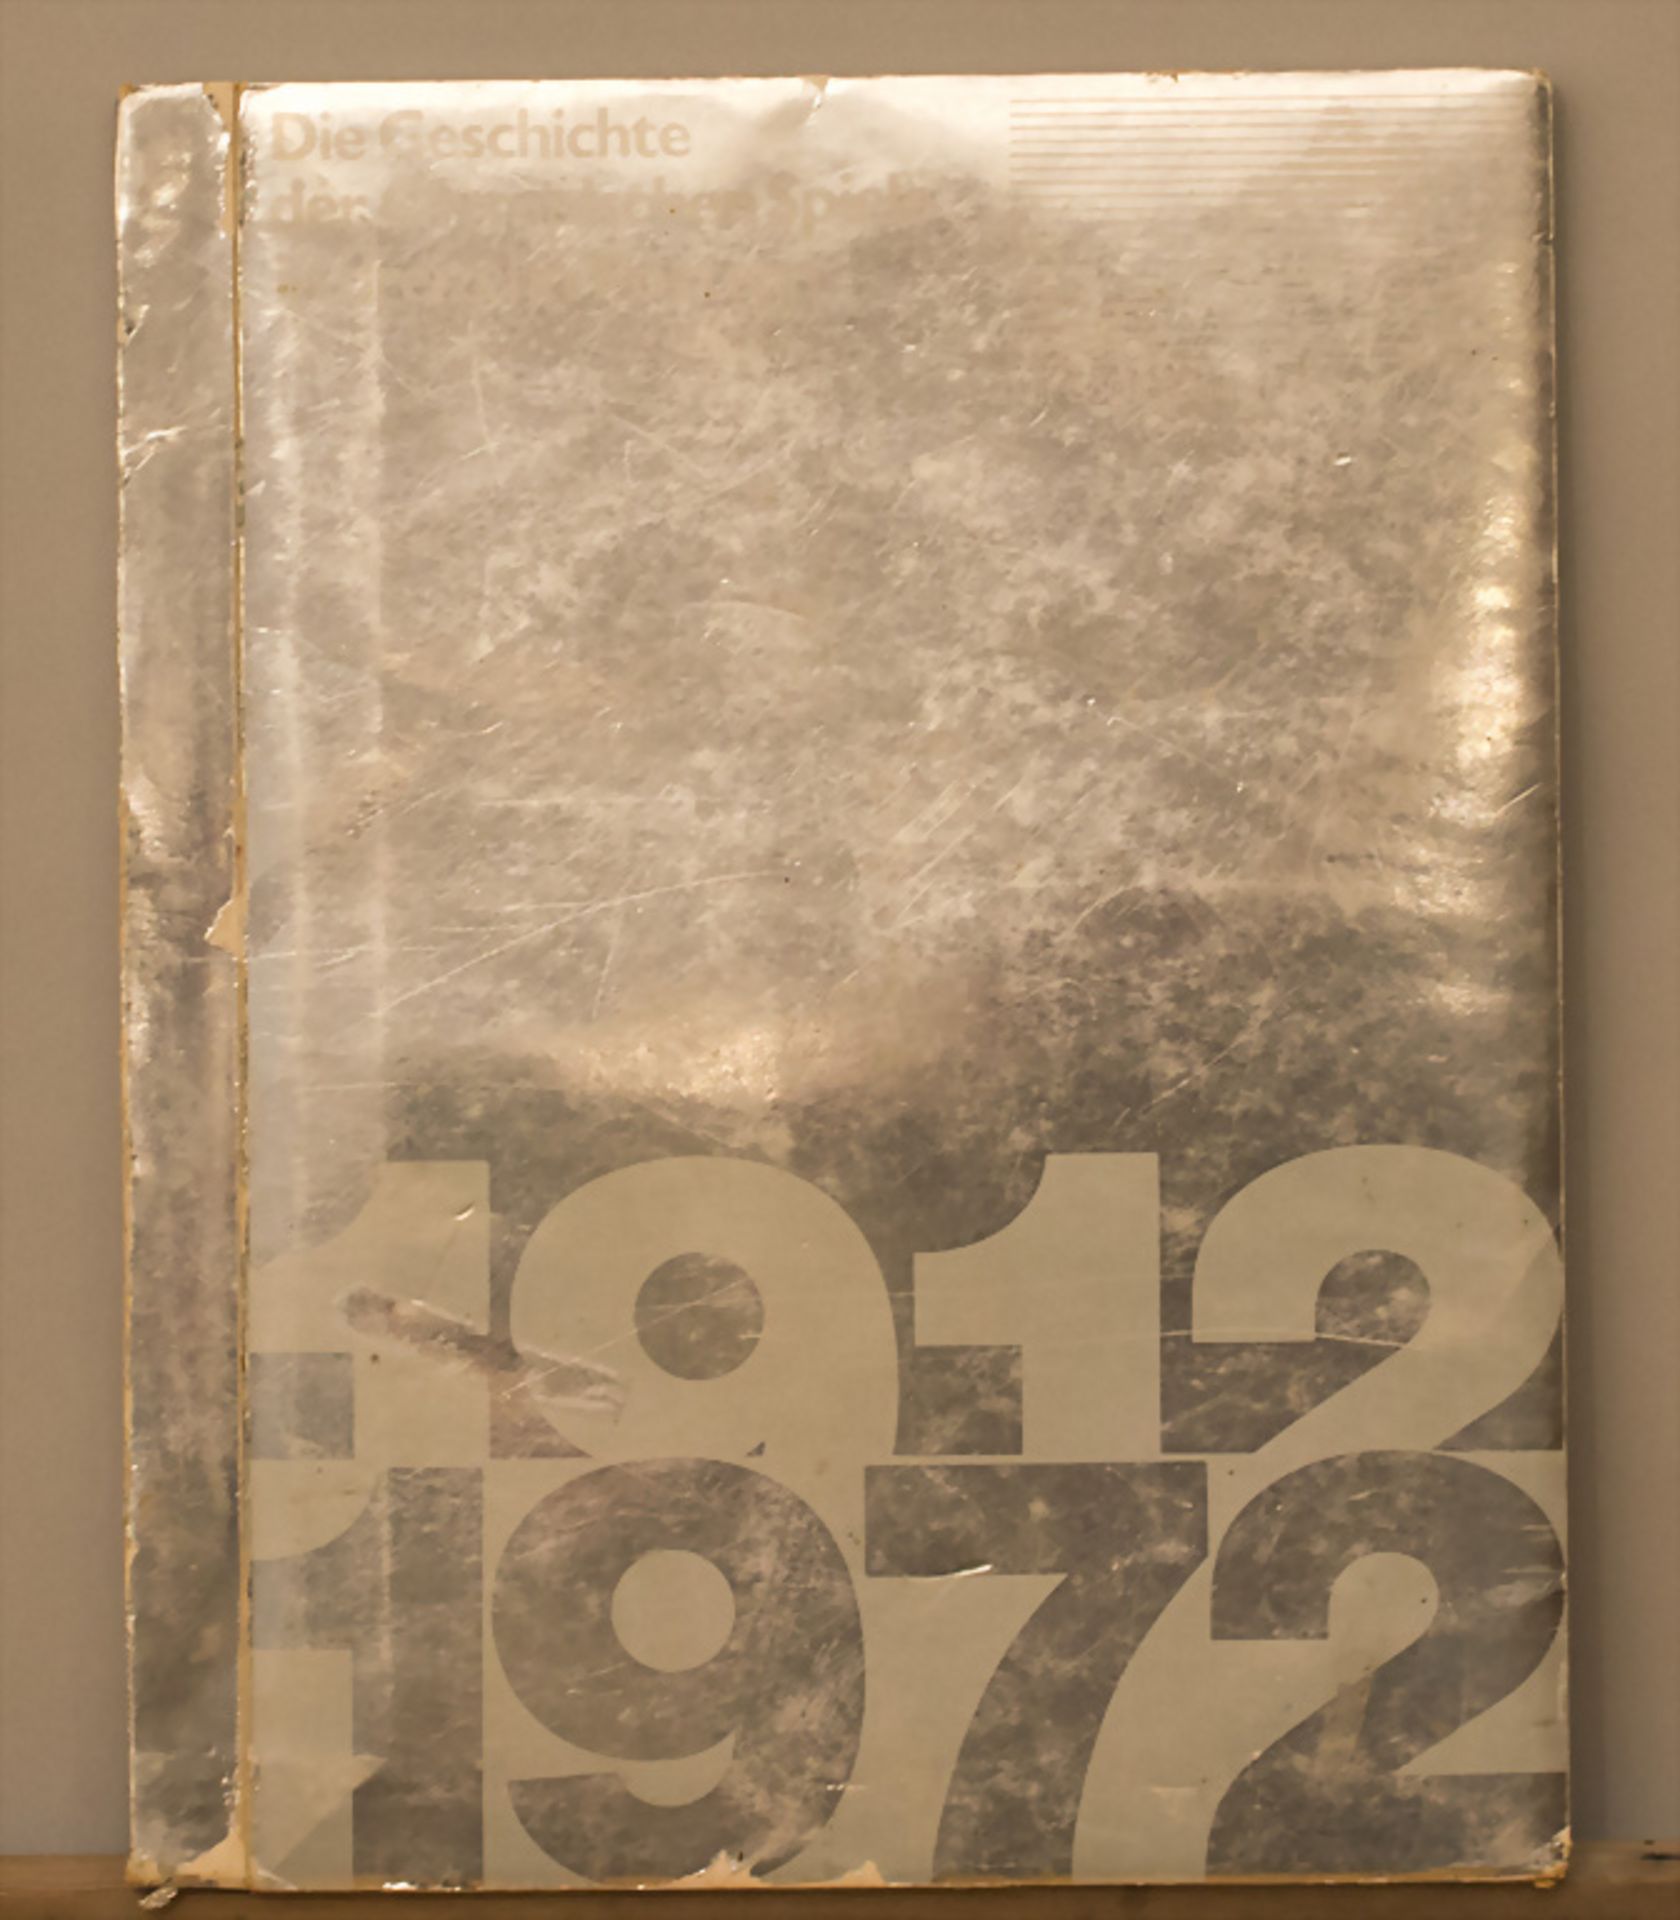 Die Geschichte der Olympischen Spiele in dreizehn Postern 1912-1972, Texaco, 1972 - Bild 3 aus 3